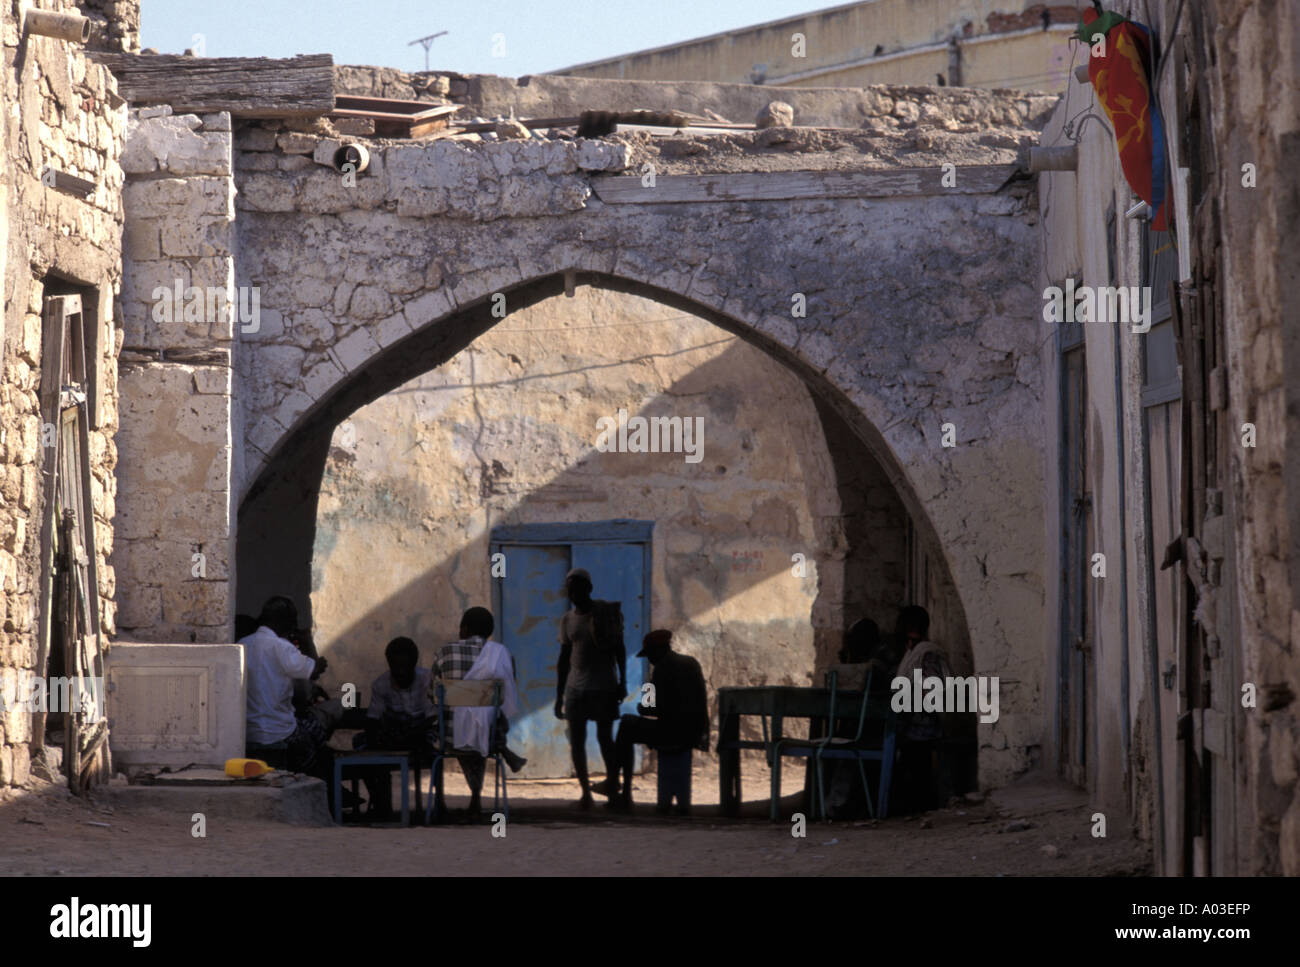 Stock Bild von Straßenszenen in Massawa Eritrea Stockfoto